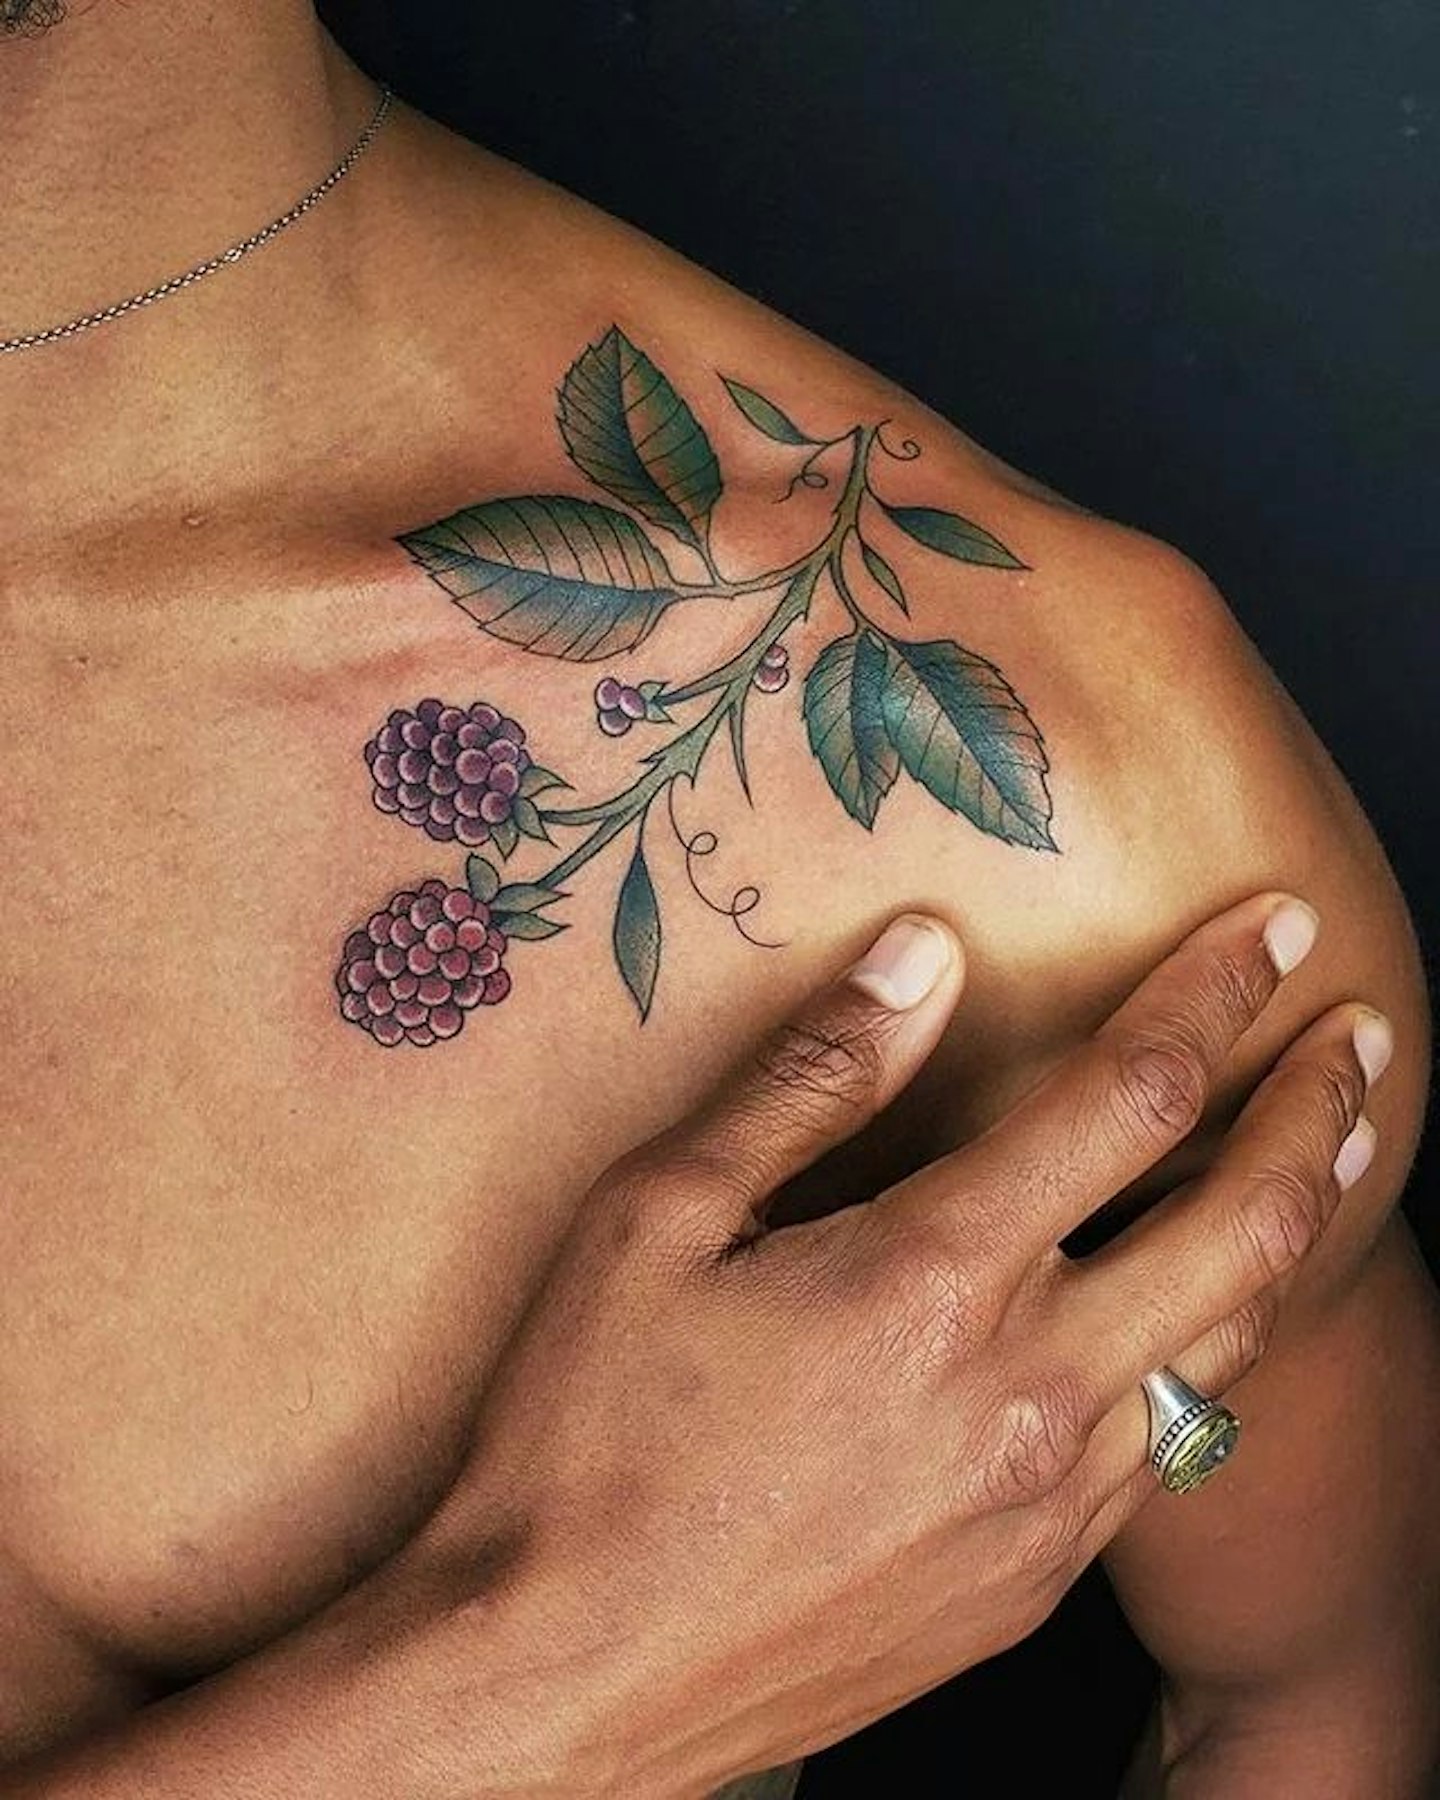 tattoos-on-black-skin